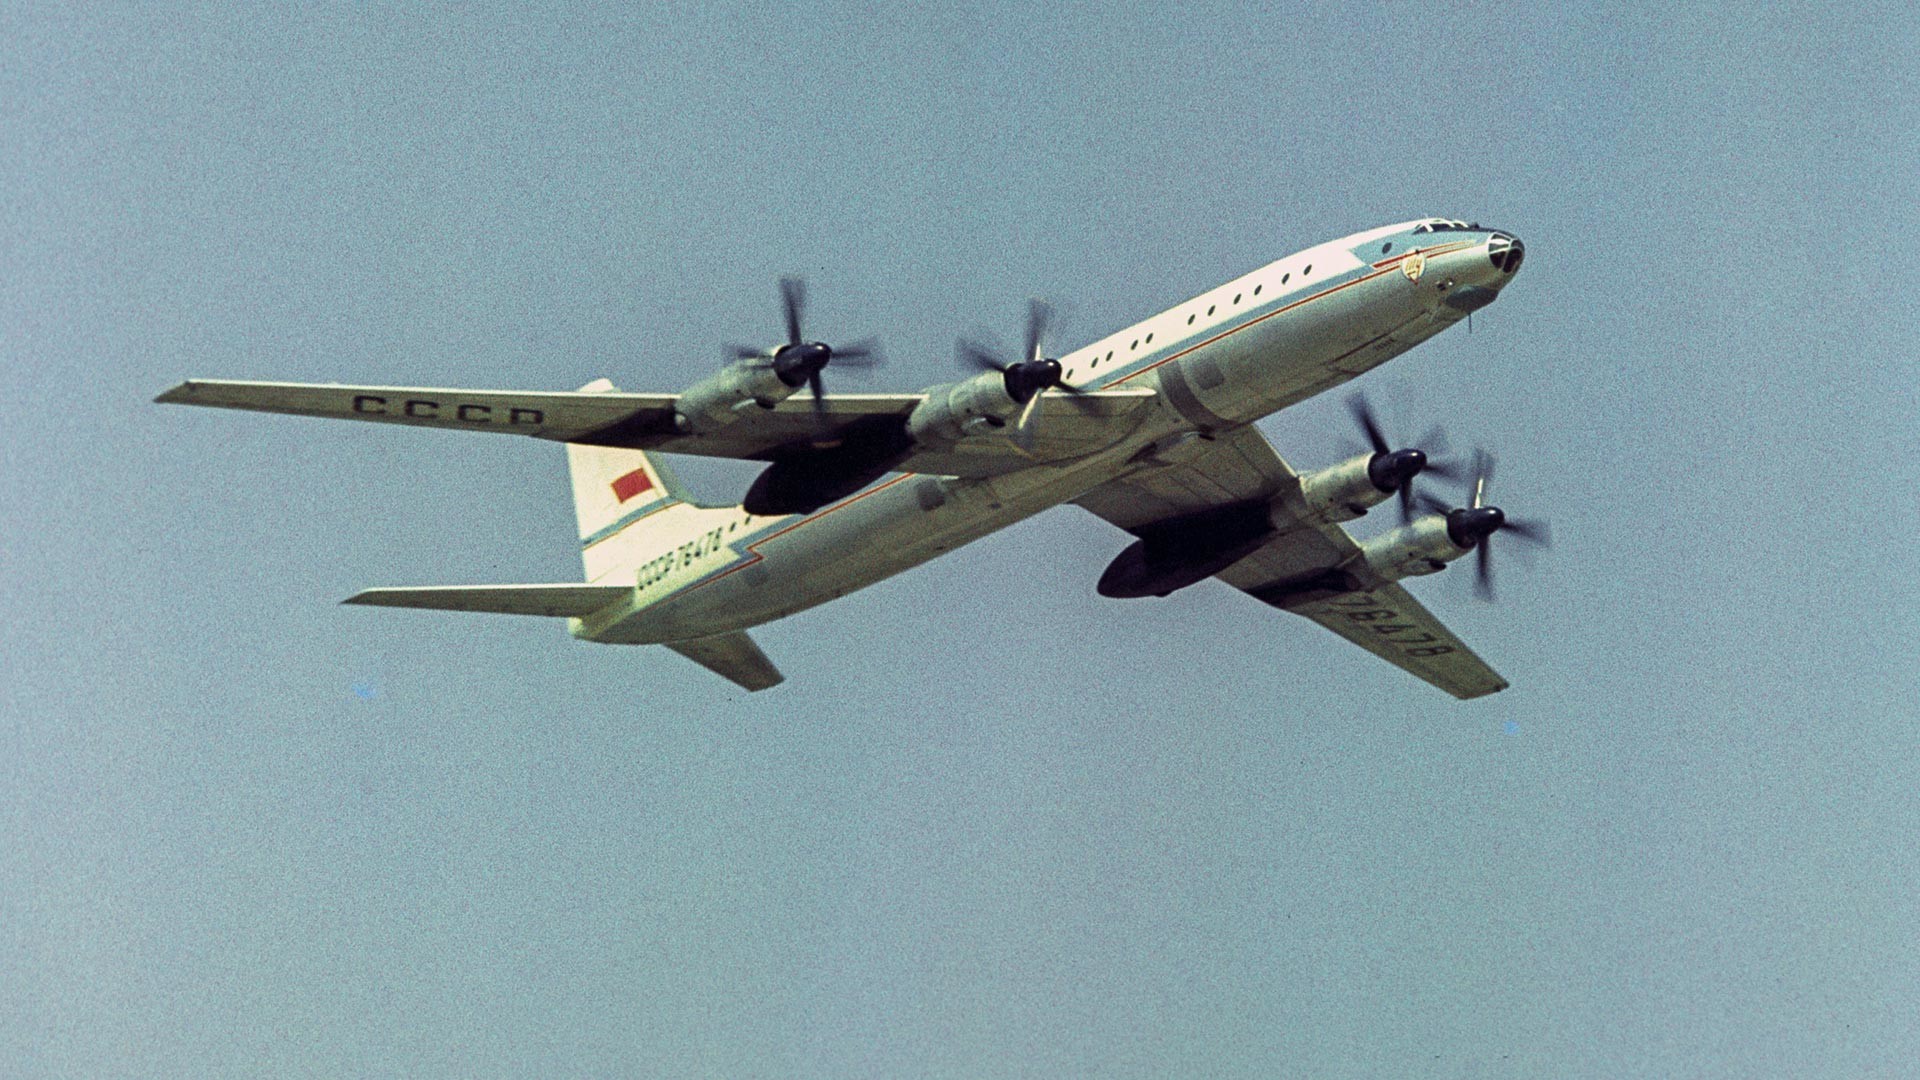 Zrakoplovna proslava na aerodromu Domodjedovo, povodom 50. godišnjice Velikog oktobra. Putnički zrakoplov Tu-114.